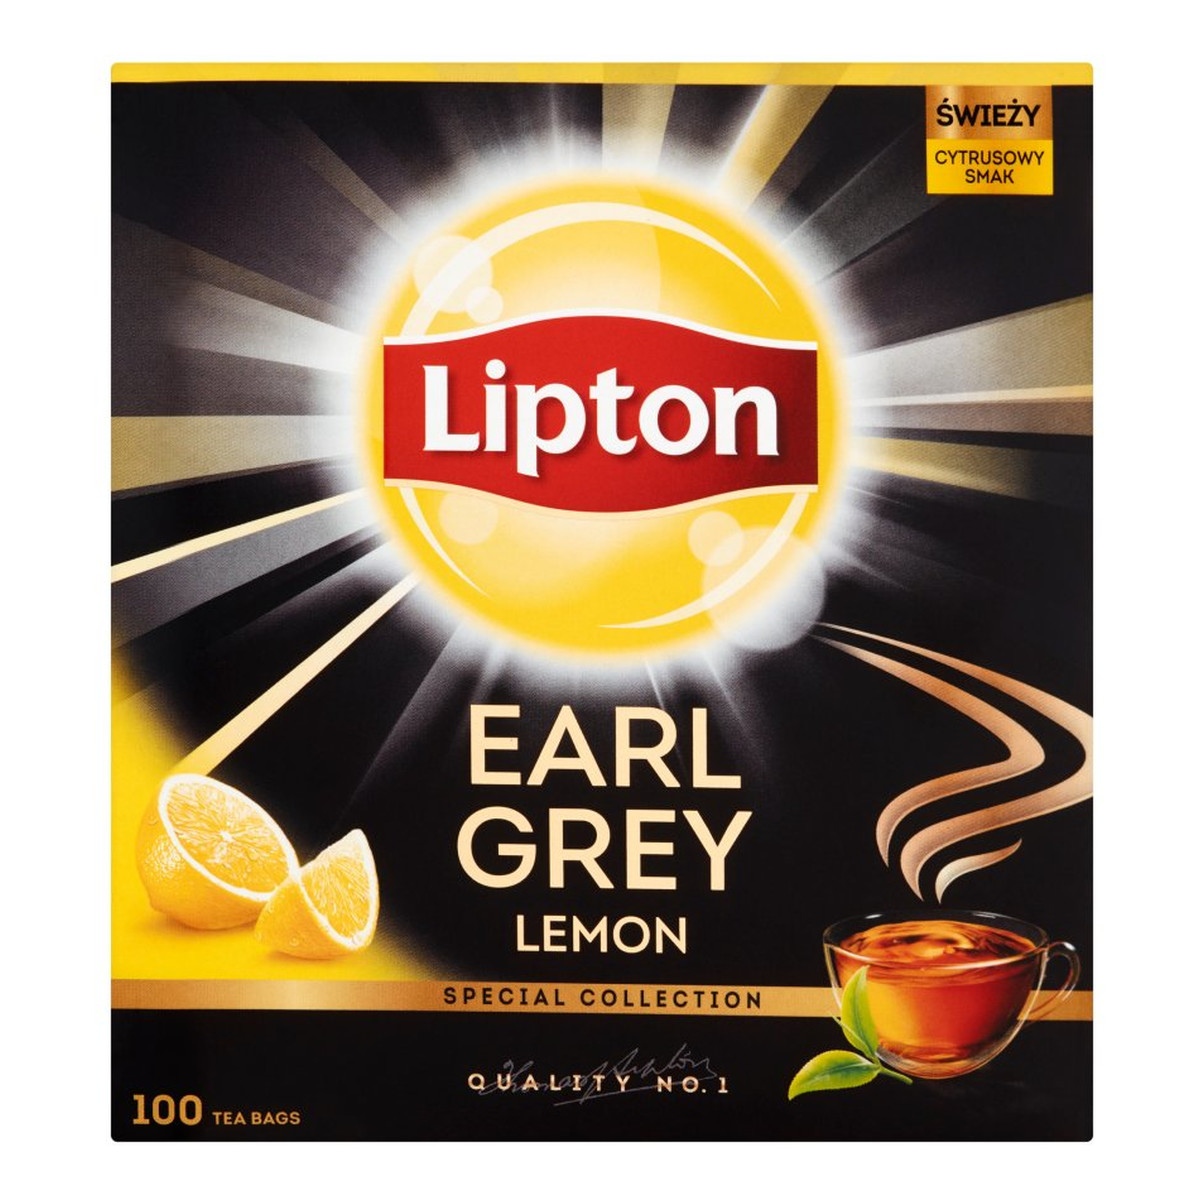 Lipton Earl Grey Lemon herbata czarna Cytryna 100 torebek 200g